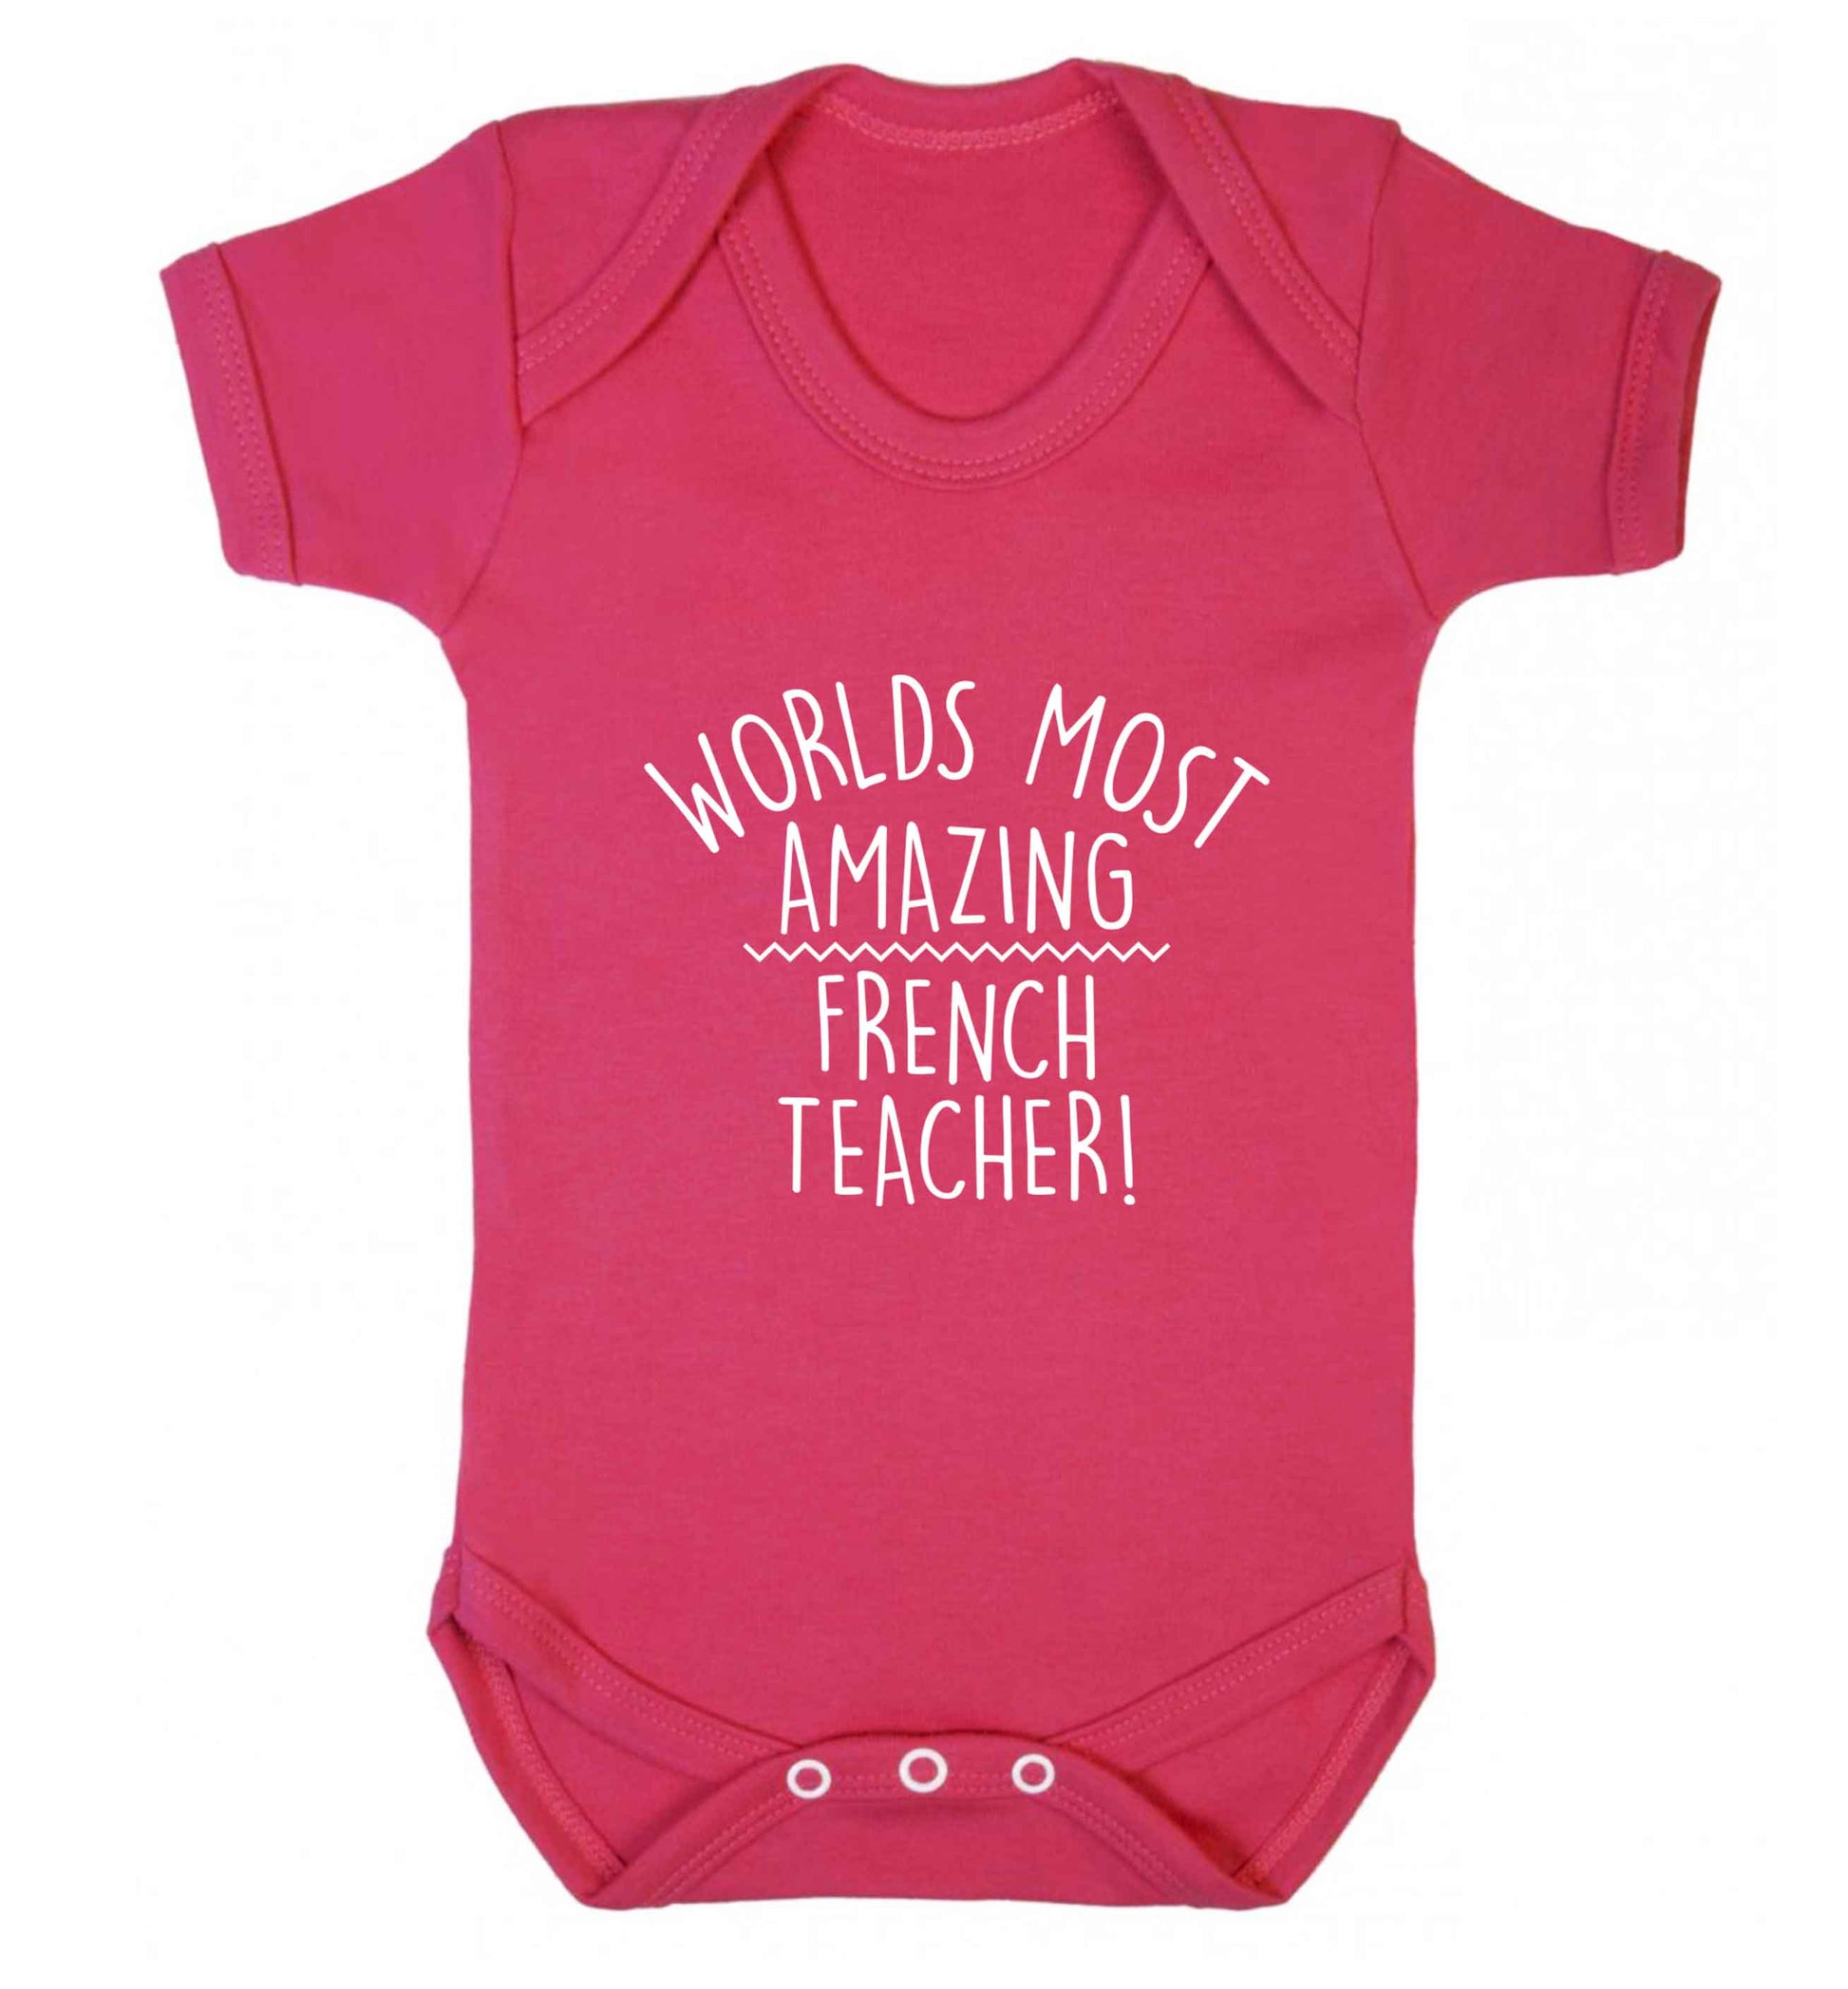 Worlds most amazing French teacher baby vest dark pink 18-24 months